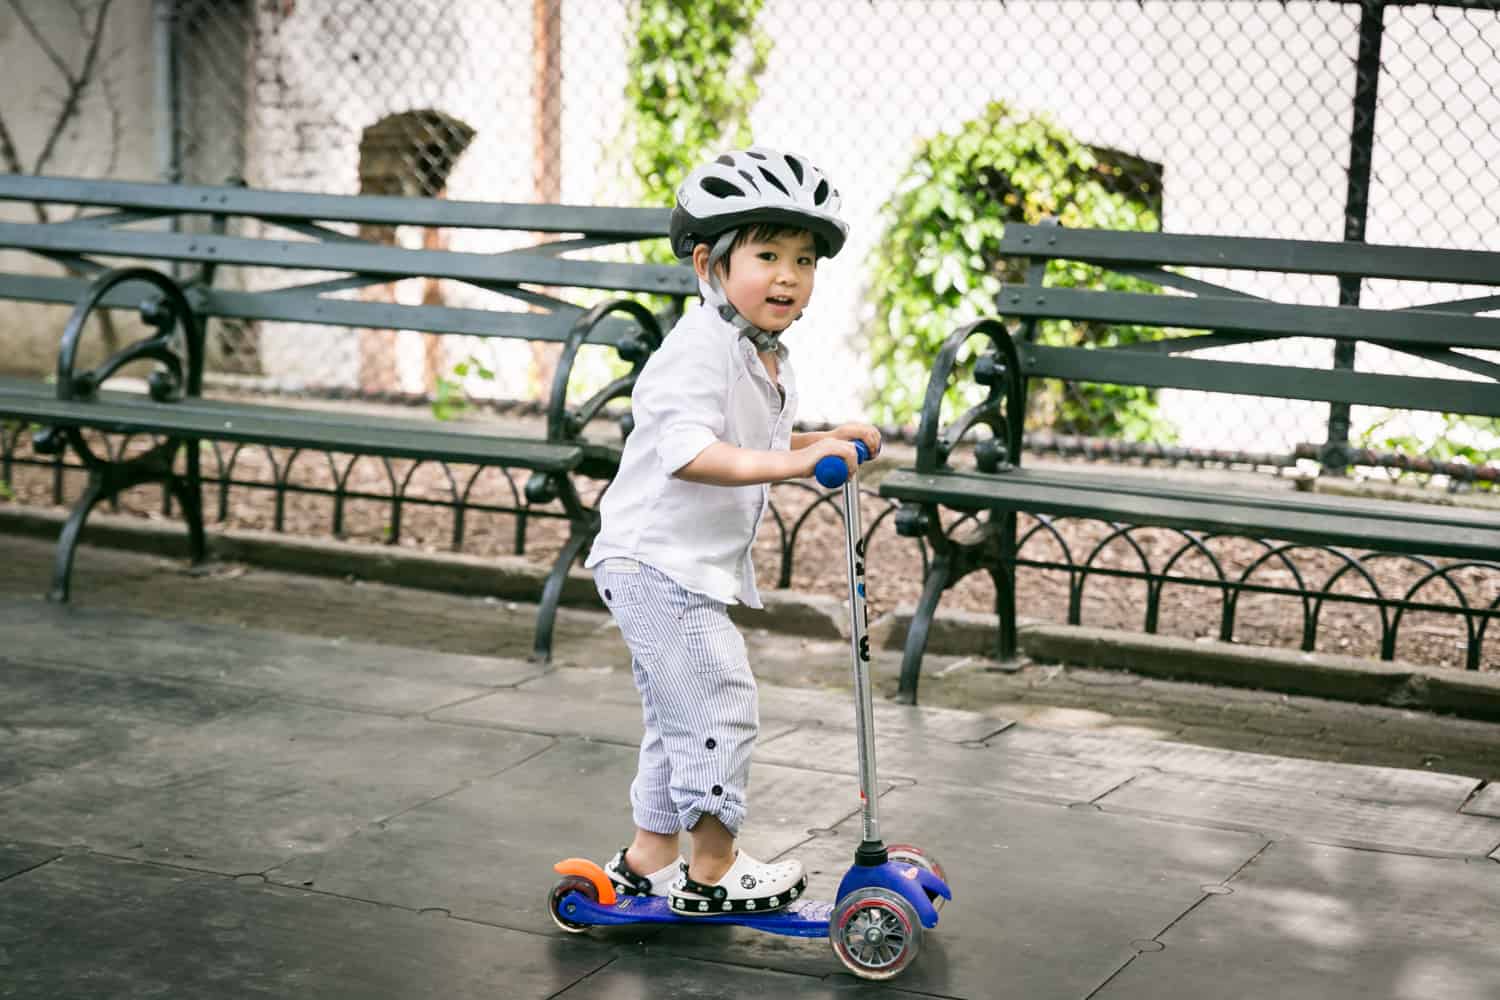 Little boy on scooter wearing bike helmet